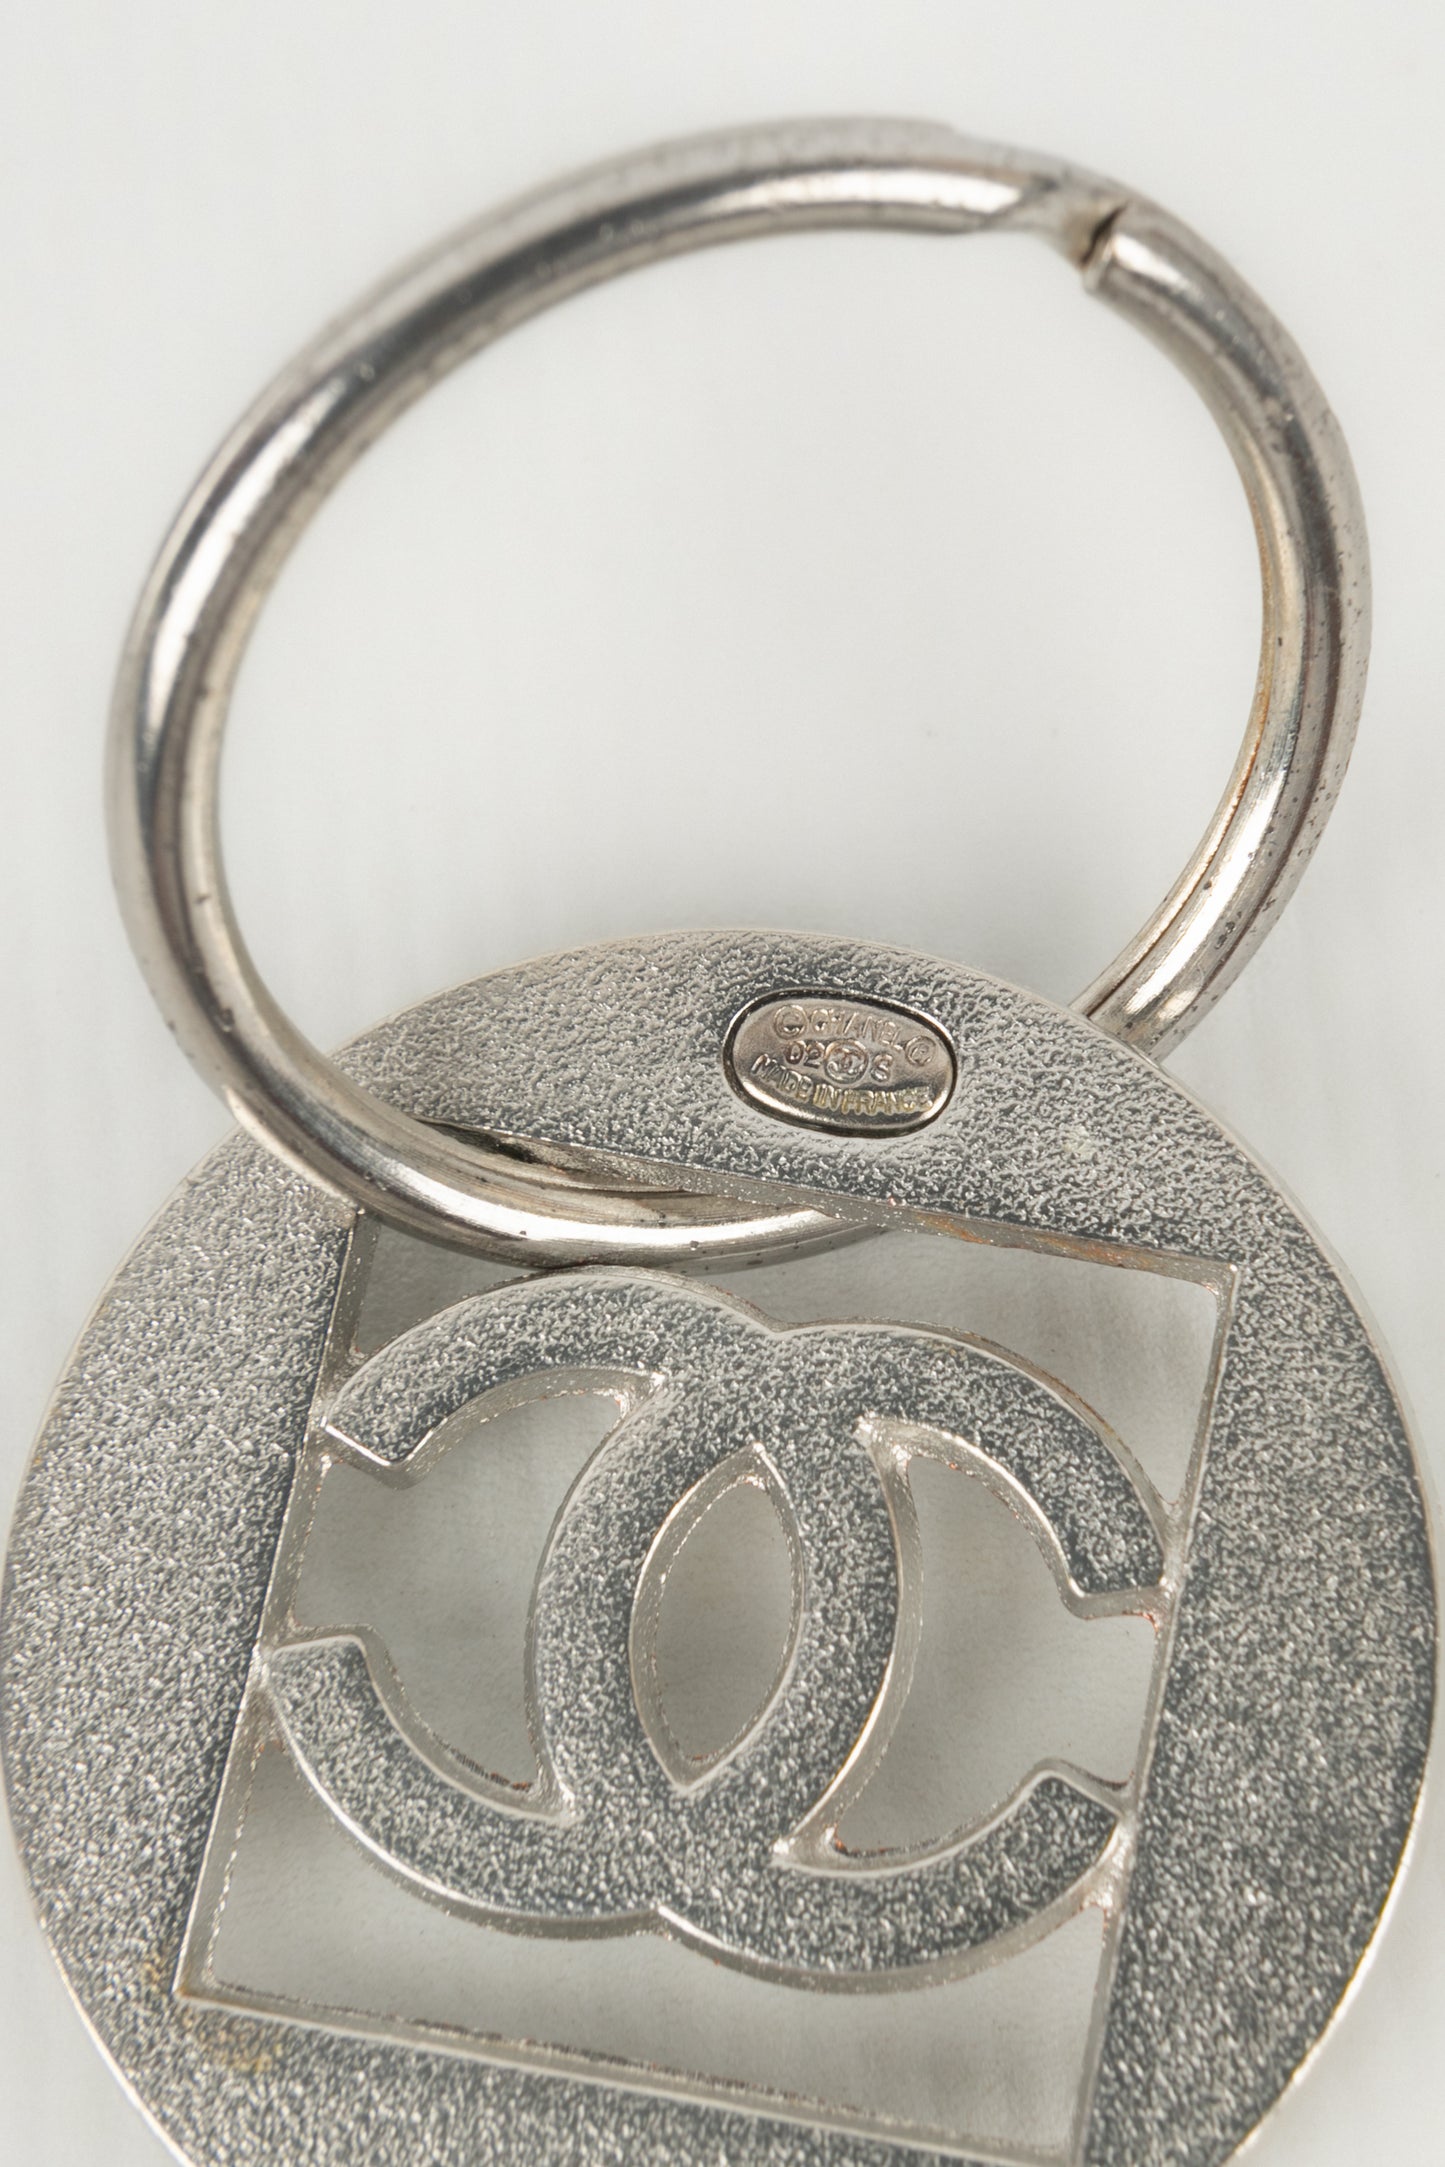 Porte-clés Chanel 2002